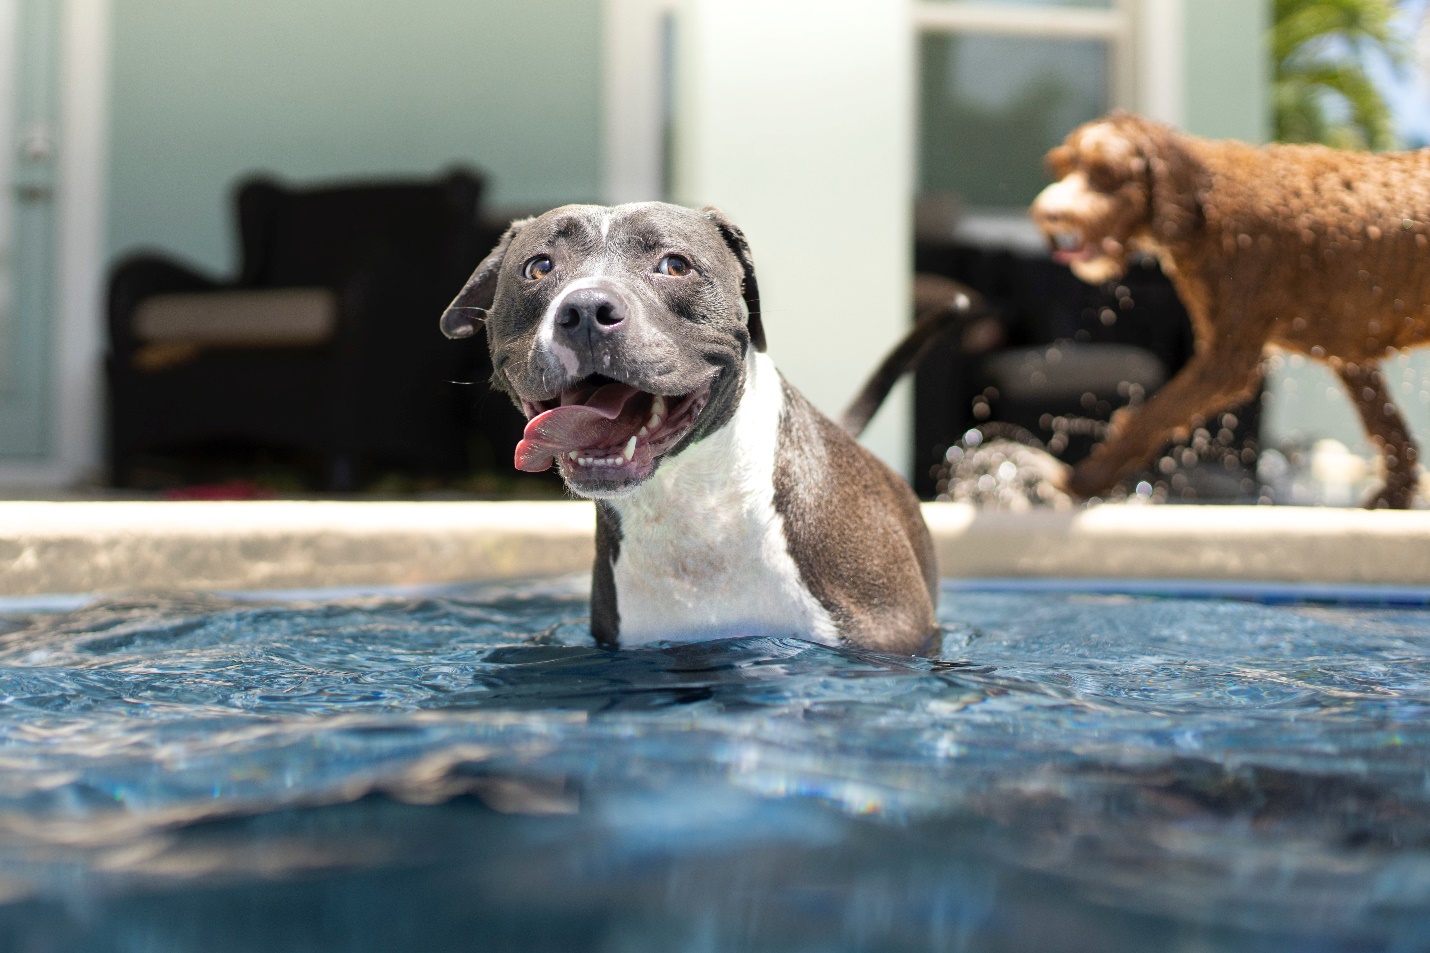 A dog enjoying in a daycare pool.